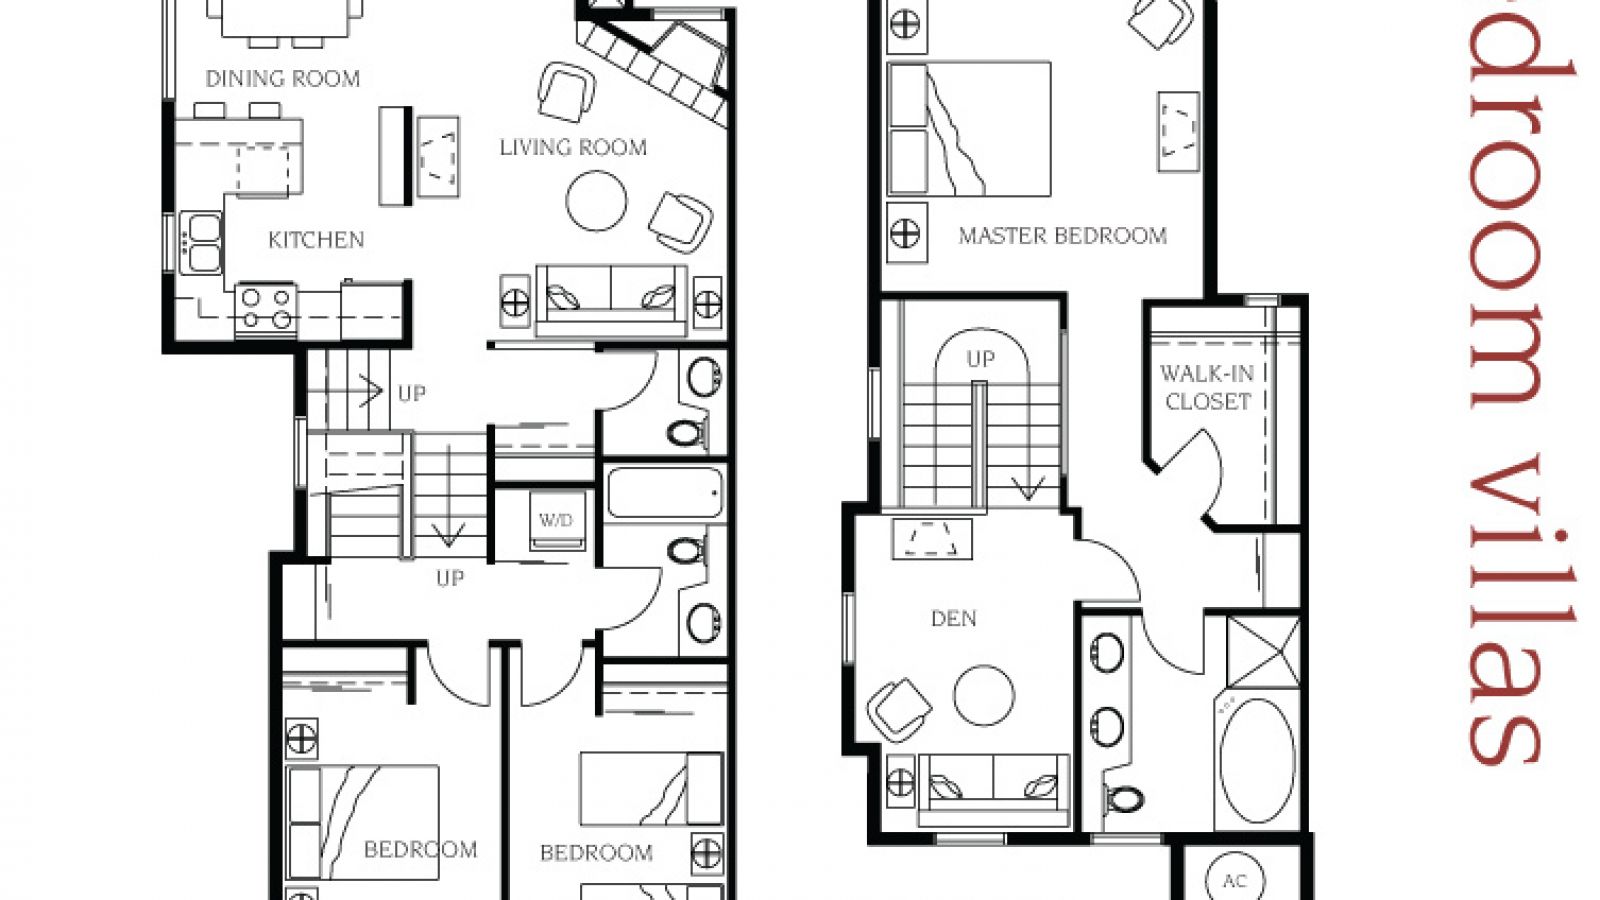 3 bedroom villa floor plan at Manteo